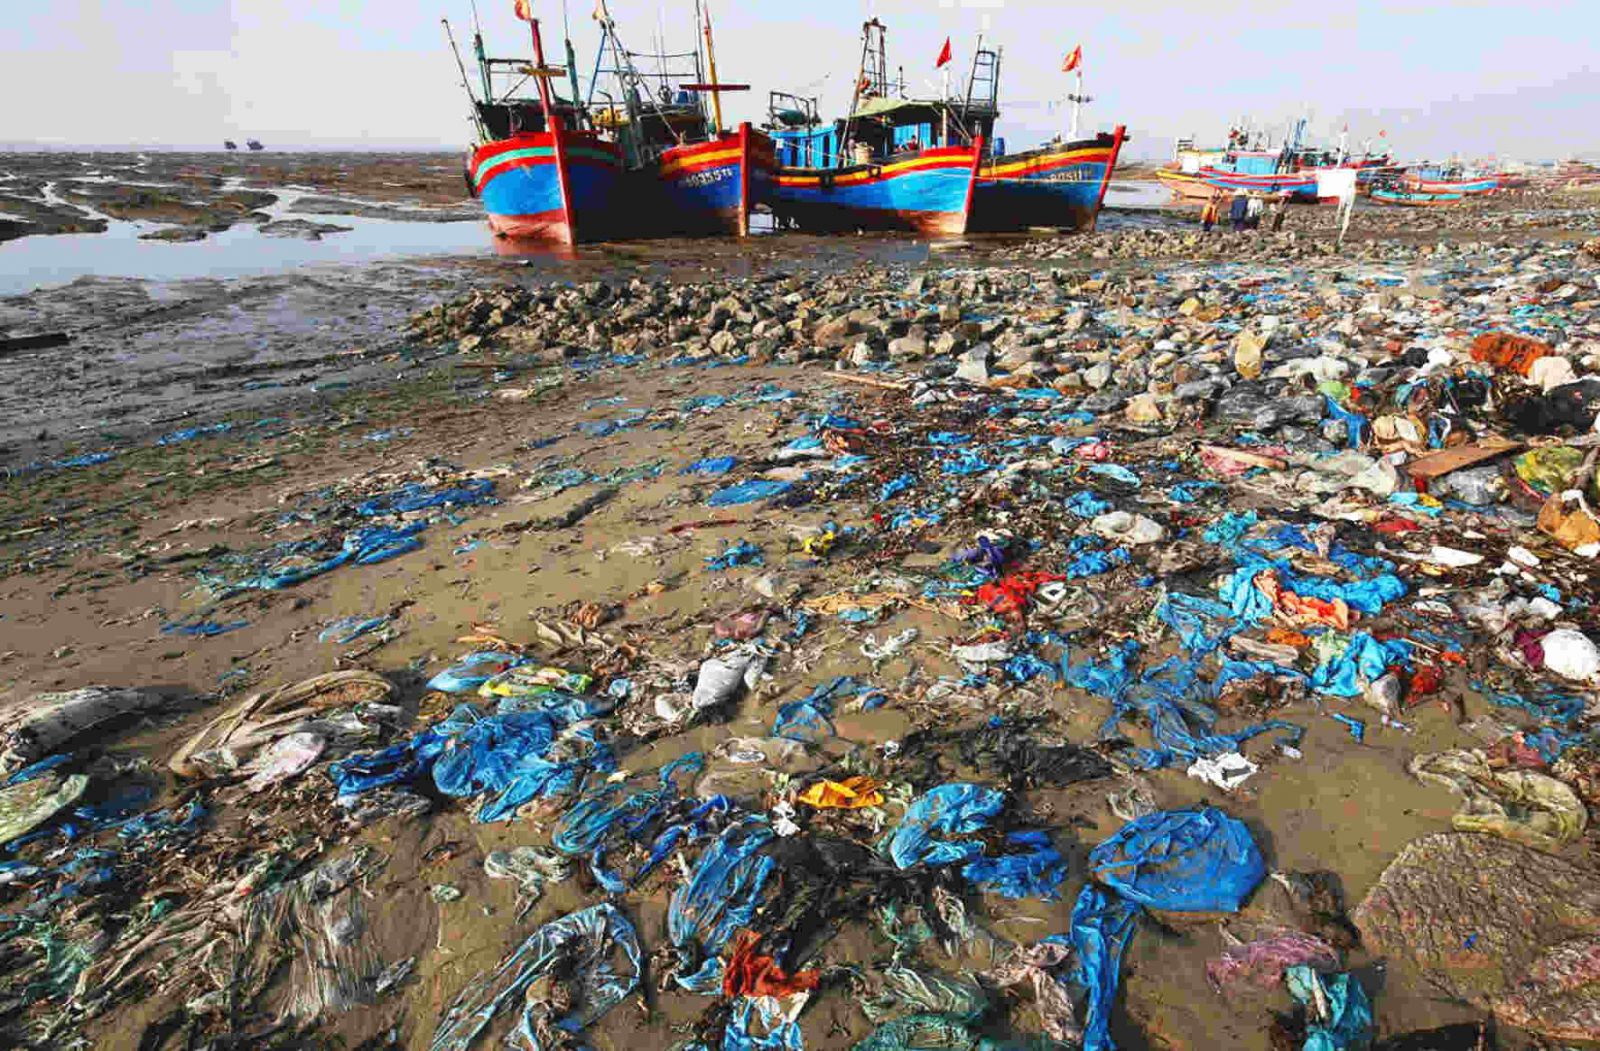 Ô nhiễm môi trường biển nhưng hình ảnh ô nhiểm | Thông báo